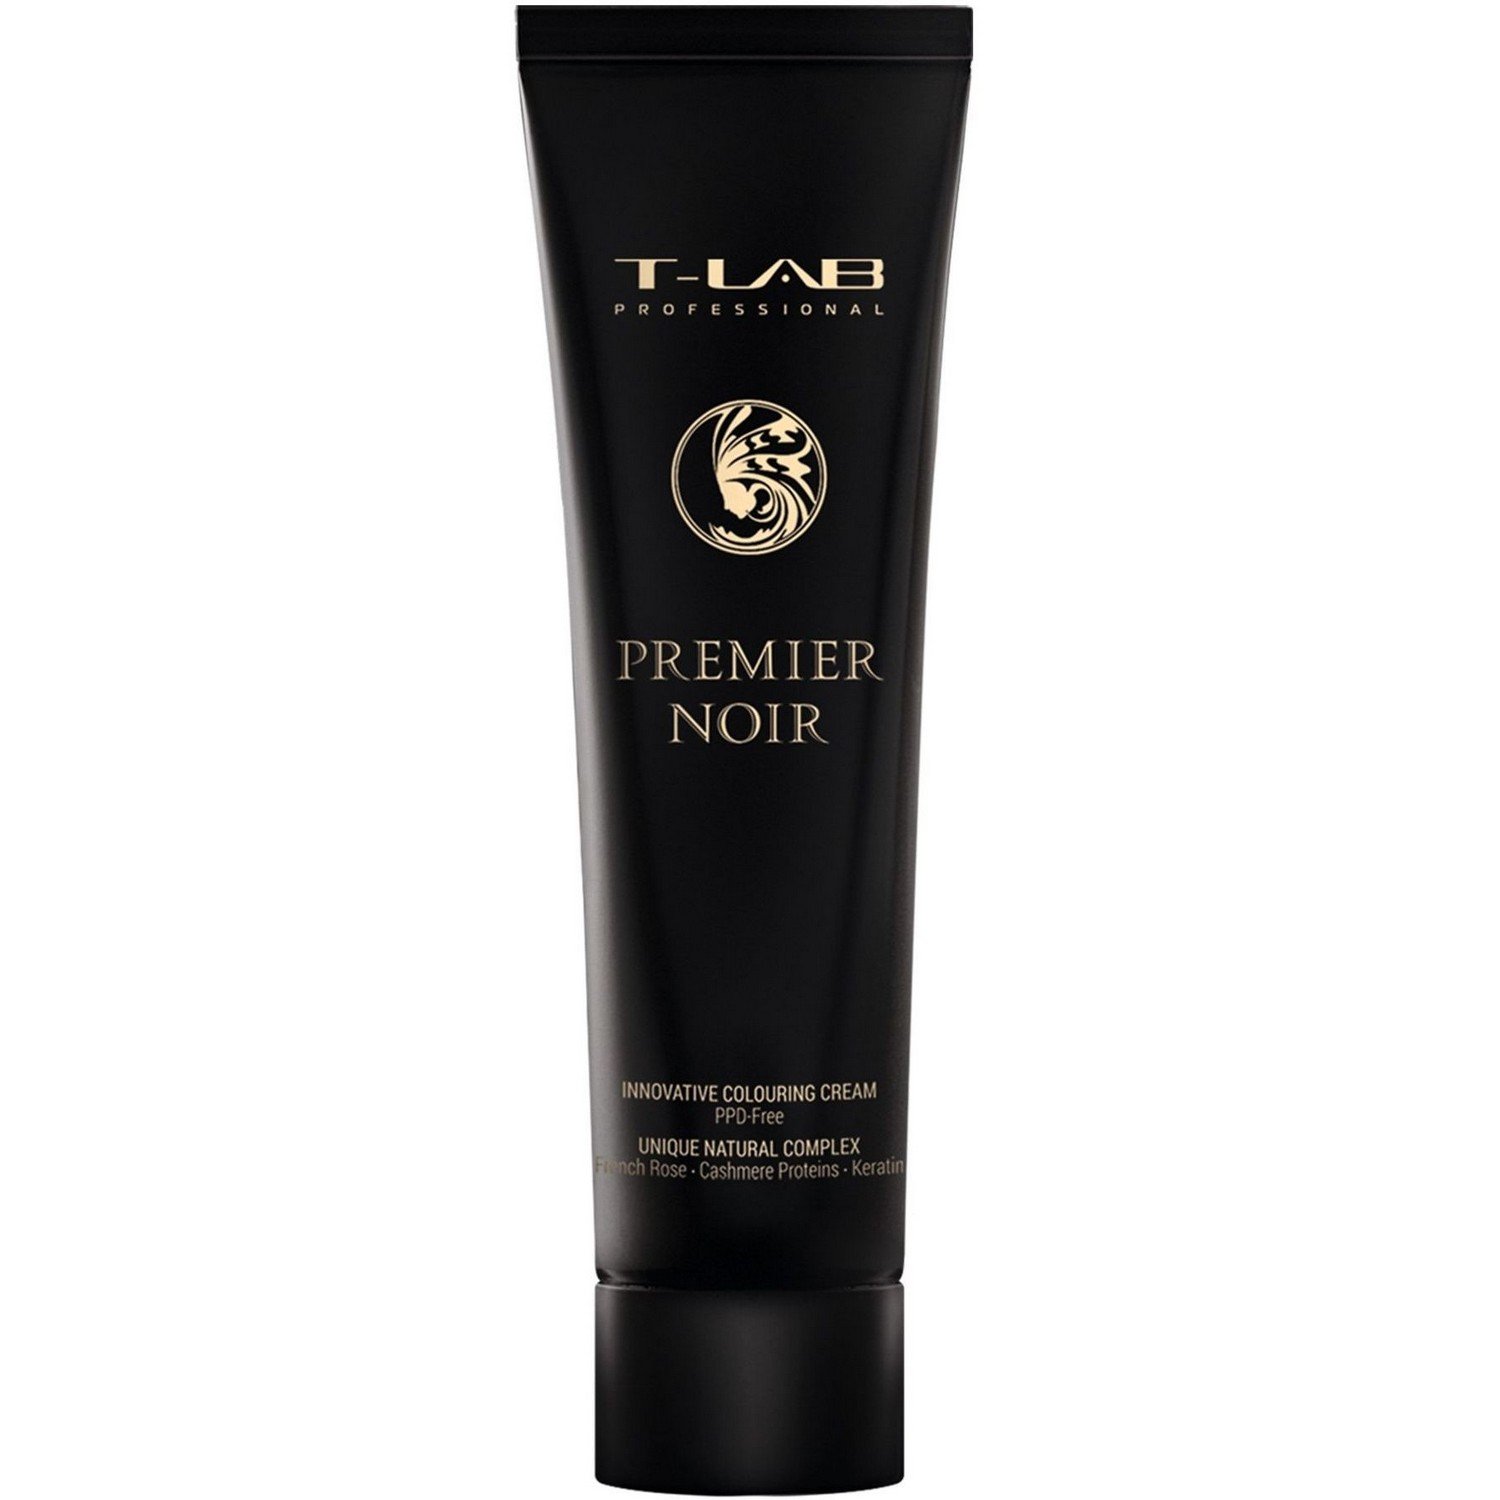 Крем-фарба T-LAB Professional Premier Noir colouring cream, відтінок 9.00 (deep natural very light blonde) - фото 1